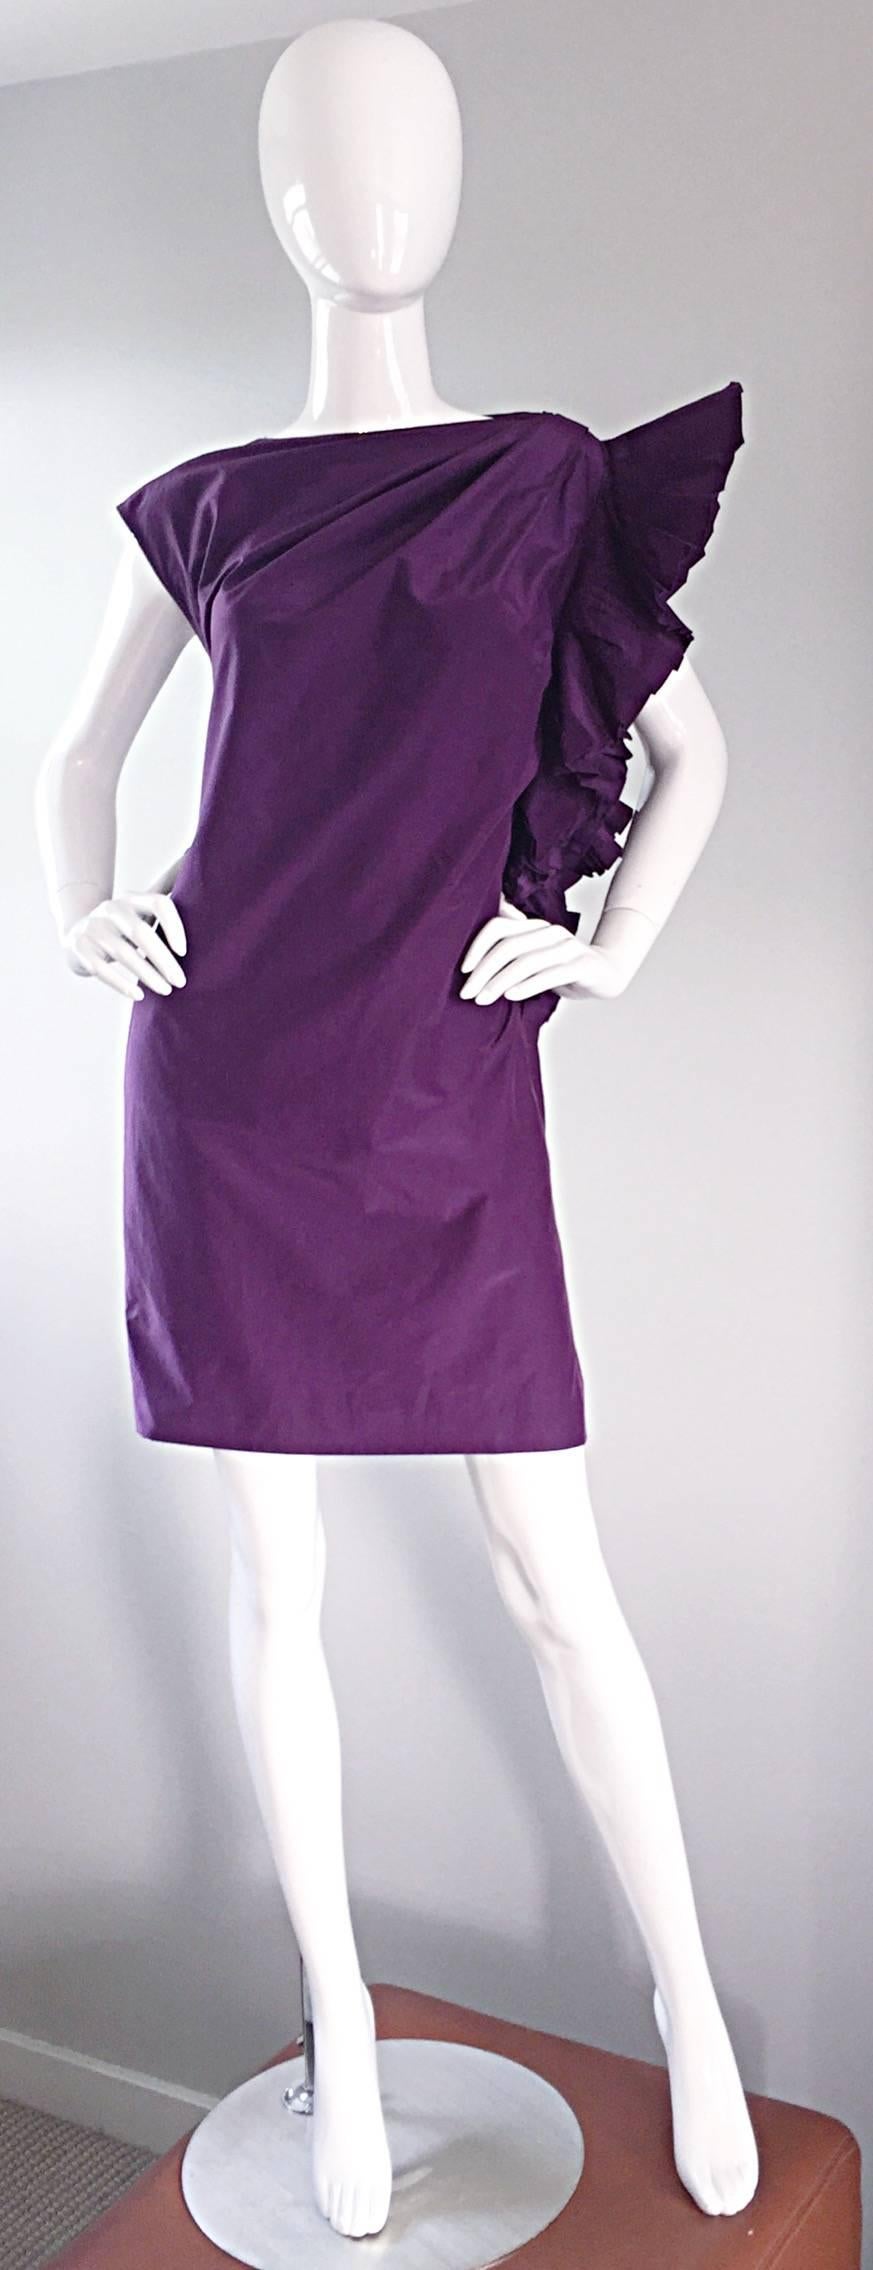 
Schönes Vintage Gianfranco Ferre lila Aubergine Seidenkleid! Mit Origami-Detail an einer Schulter, das auf verschiedene Weise getragen werden kann. Erstaunlich satte Farben und eine fantastische Liebe zum Detail, die wiederum vielen Formen und